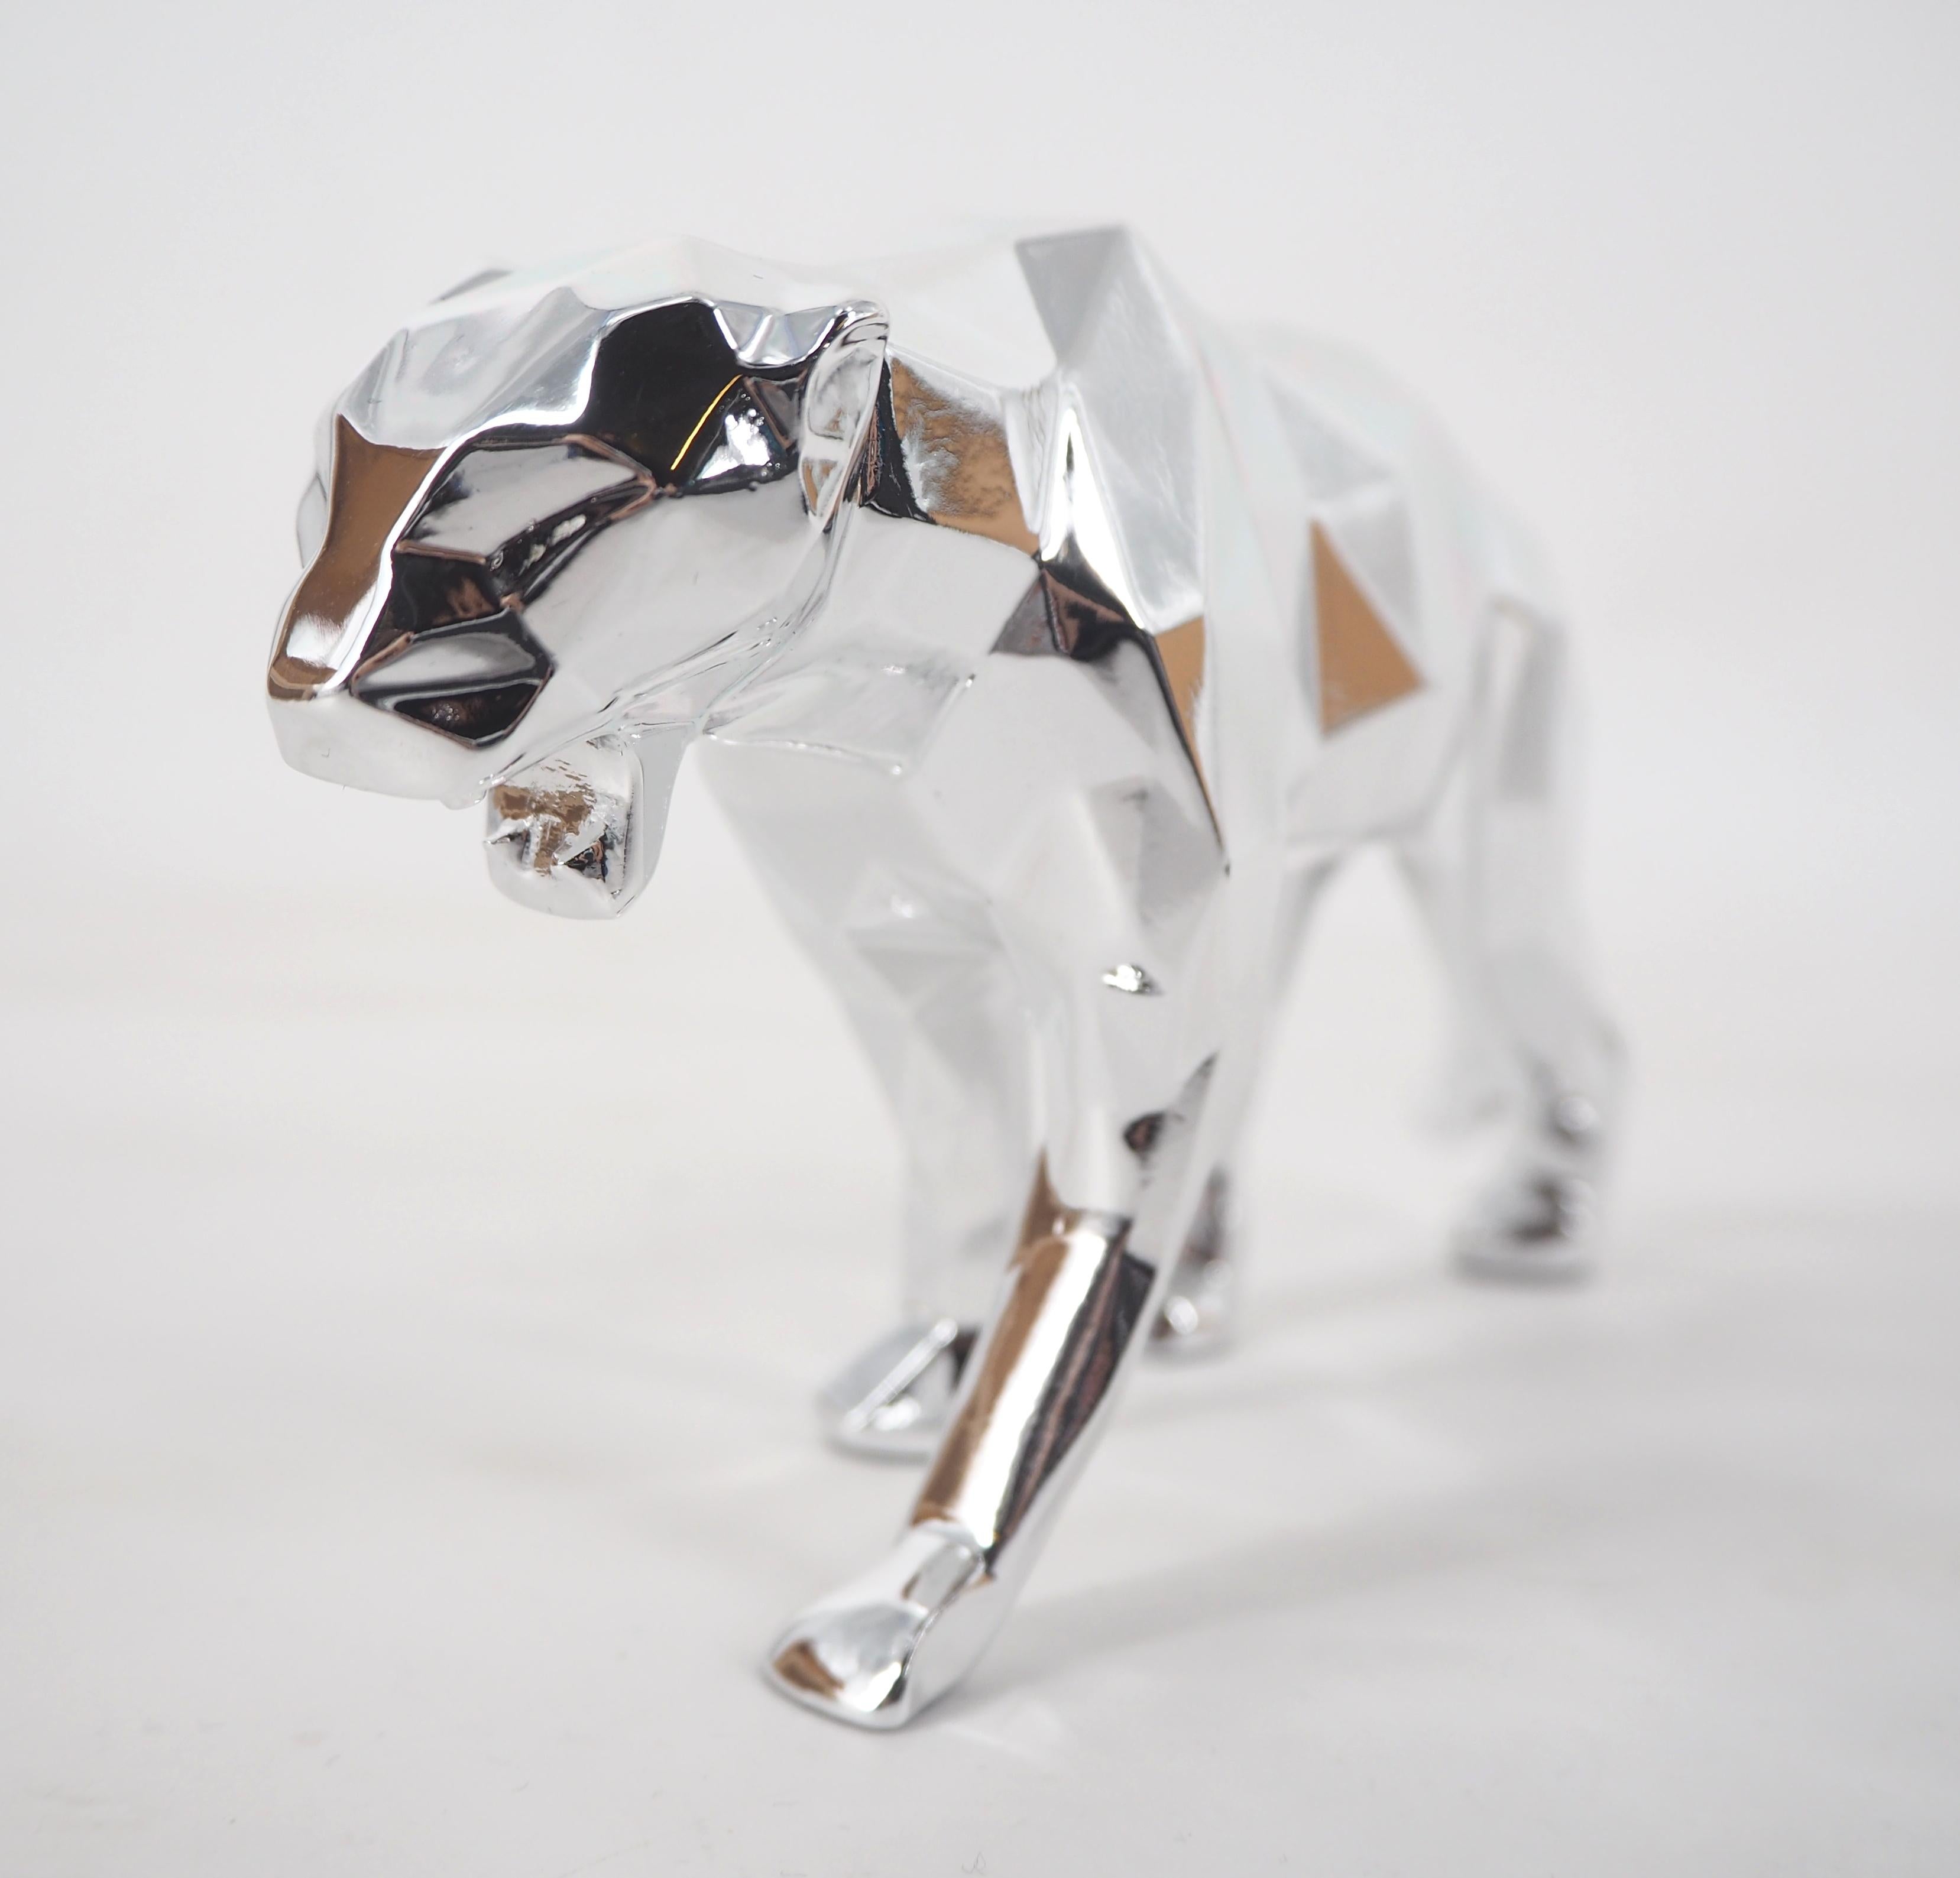 Richard ORLINSKI
Panther Spirit (édition argentée)

Sculpture en résine
Argent métallique
Environ 9 x 18 x 3,5 cm (c. 3,5 x 7 x 1,3 in).
Présenté dans sa boîte d'origine avec certificat

Excellent état